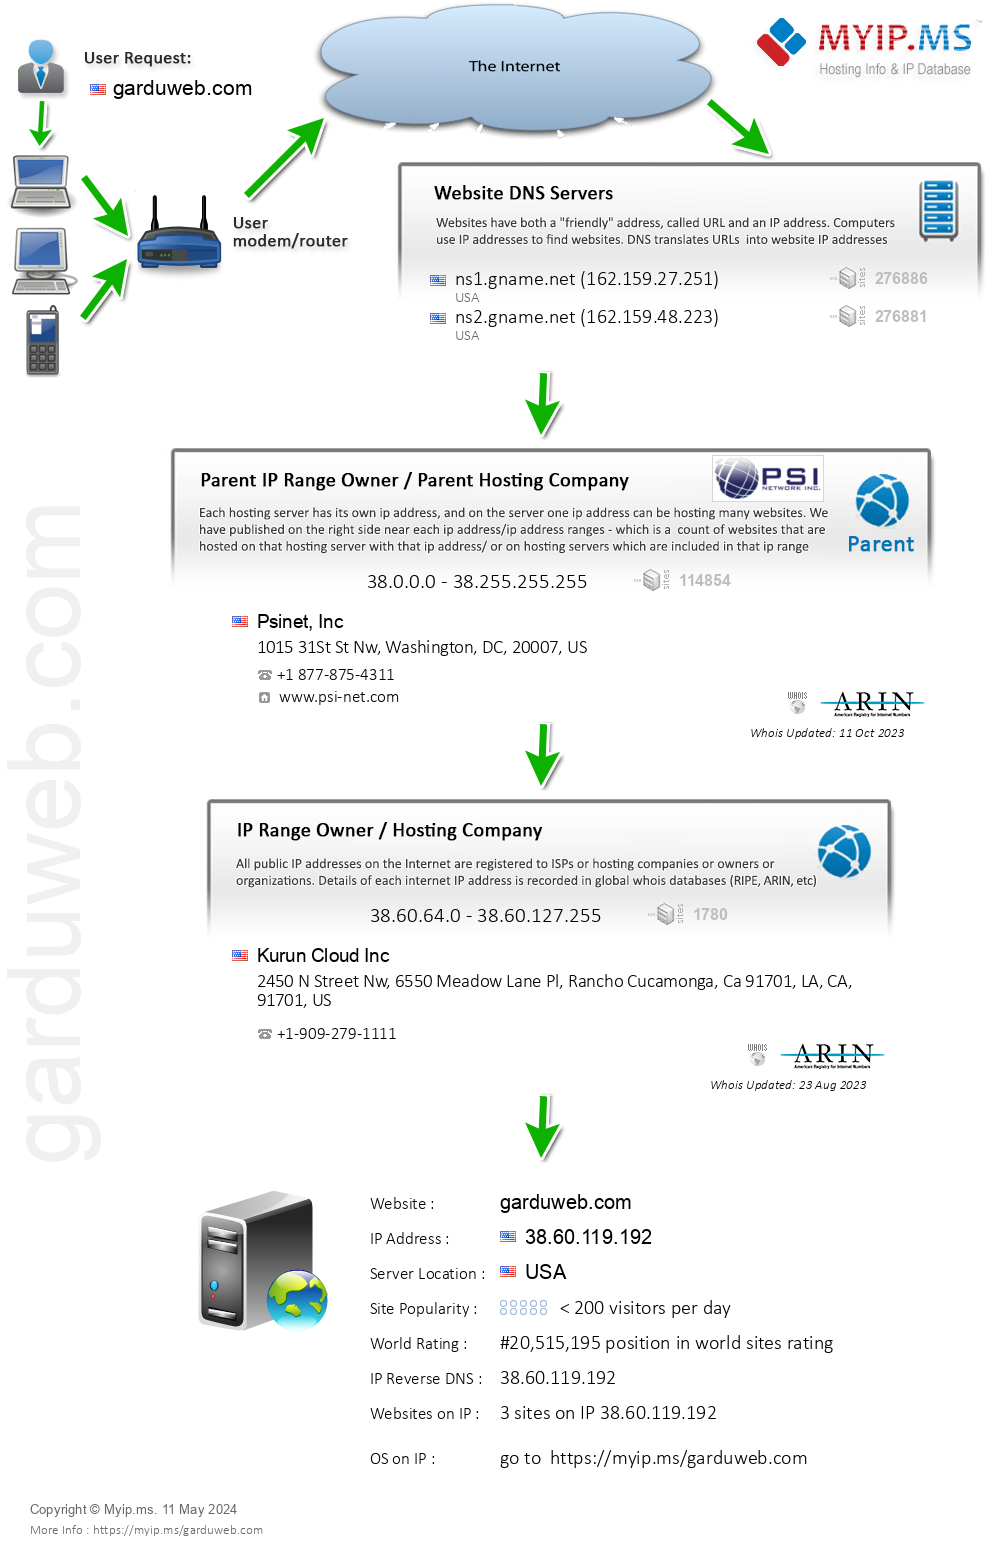 Garduweb.com - Website Hosting Visual IP Diagram